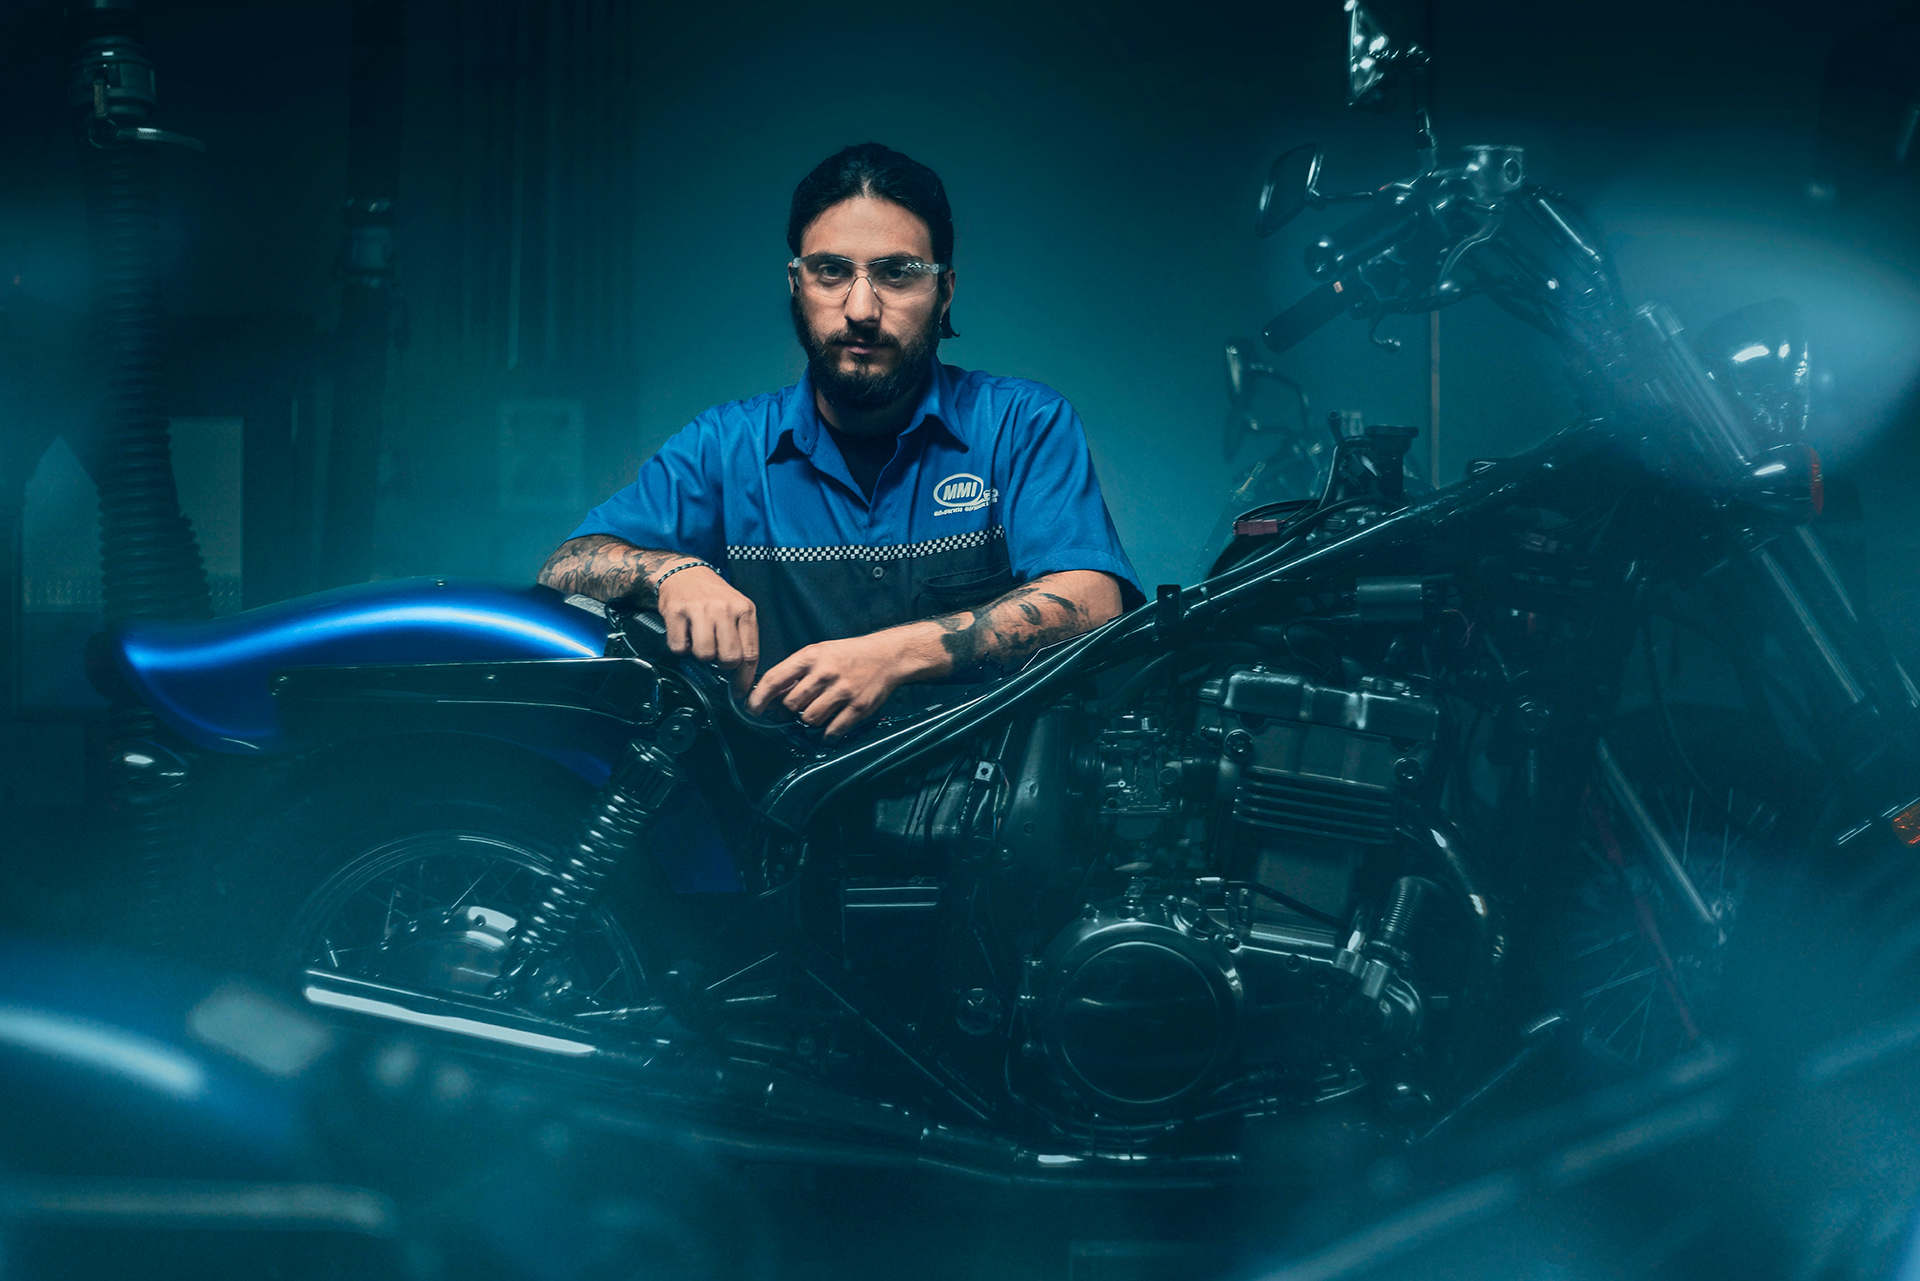 Lifestye Photograph Motorcycle Mechanic